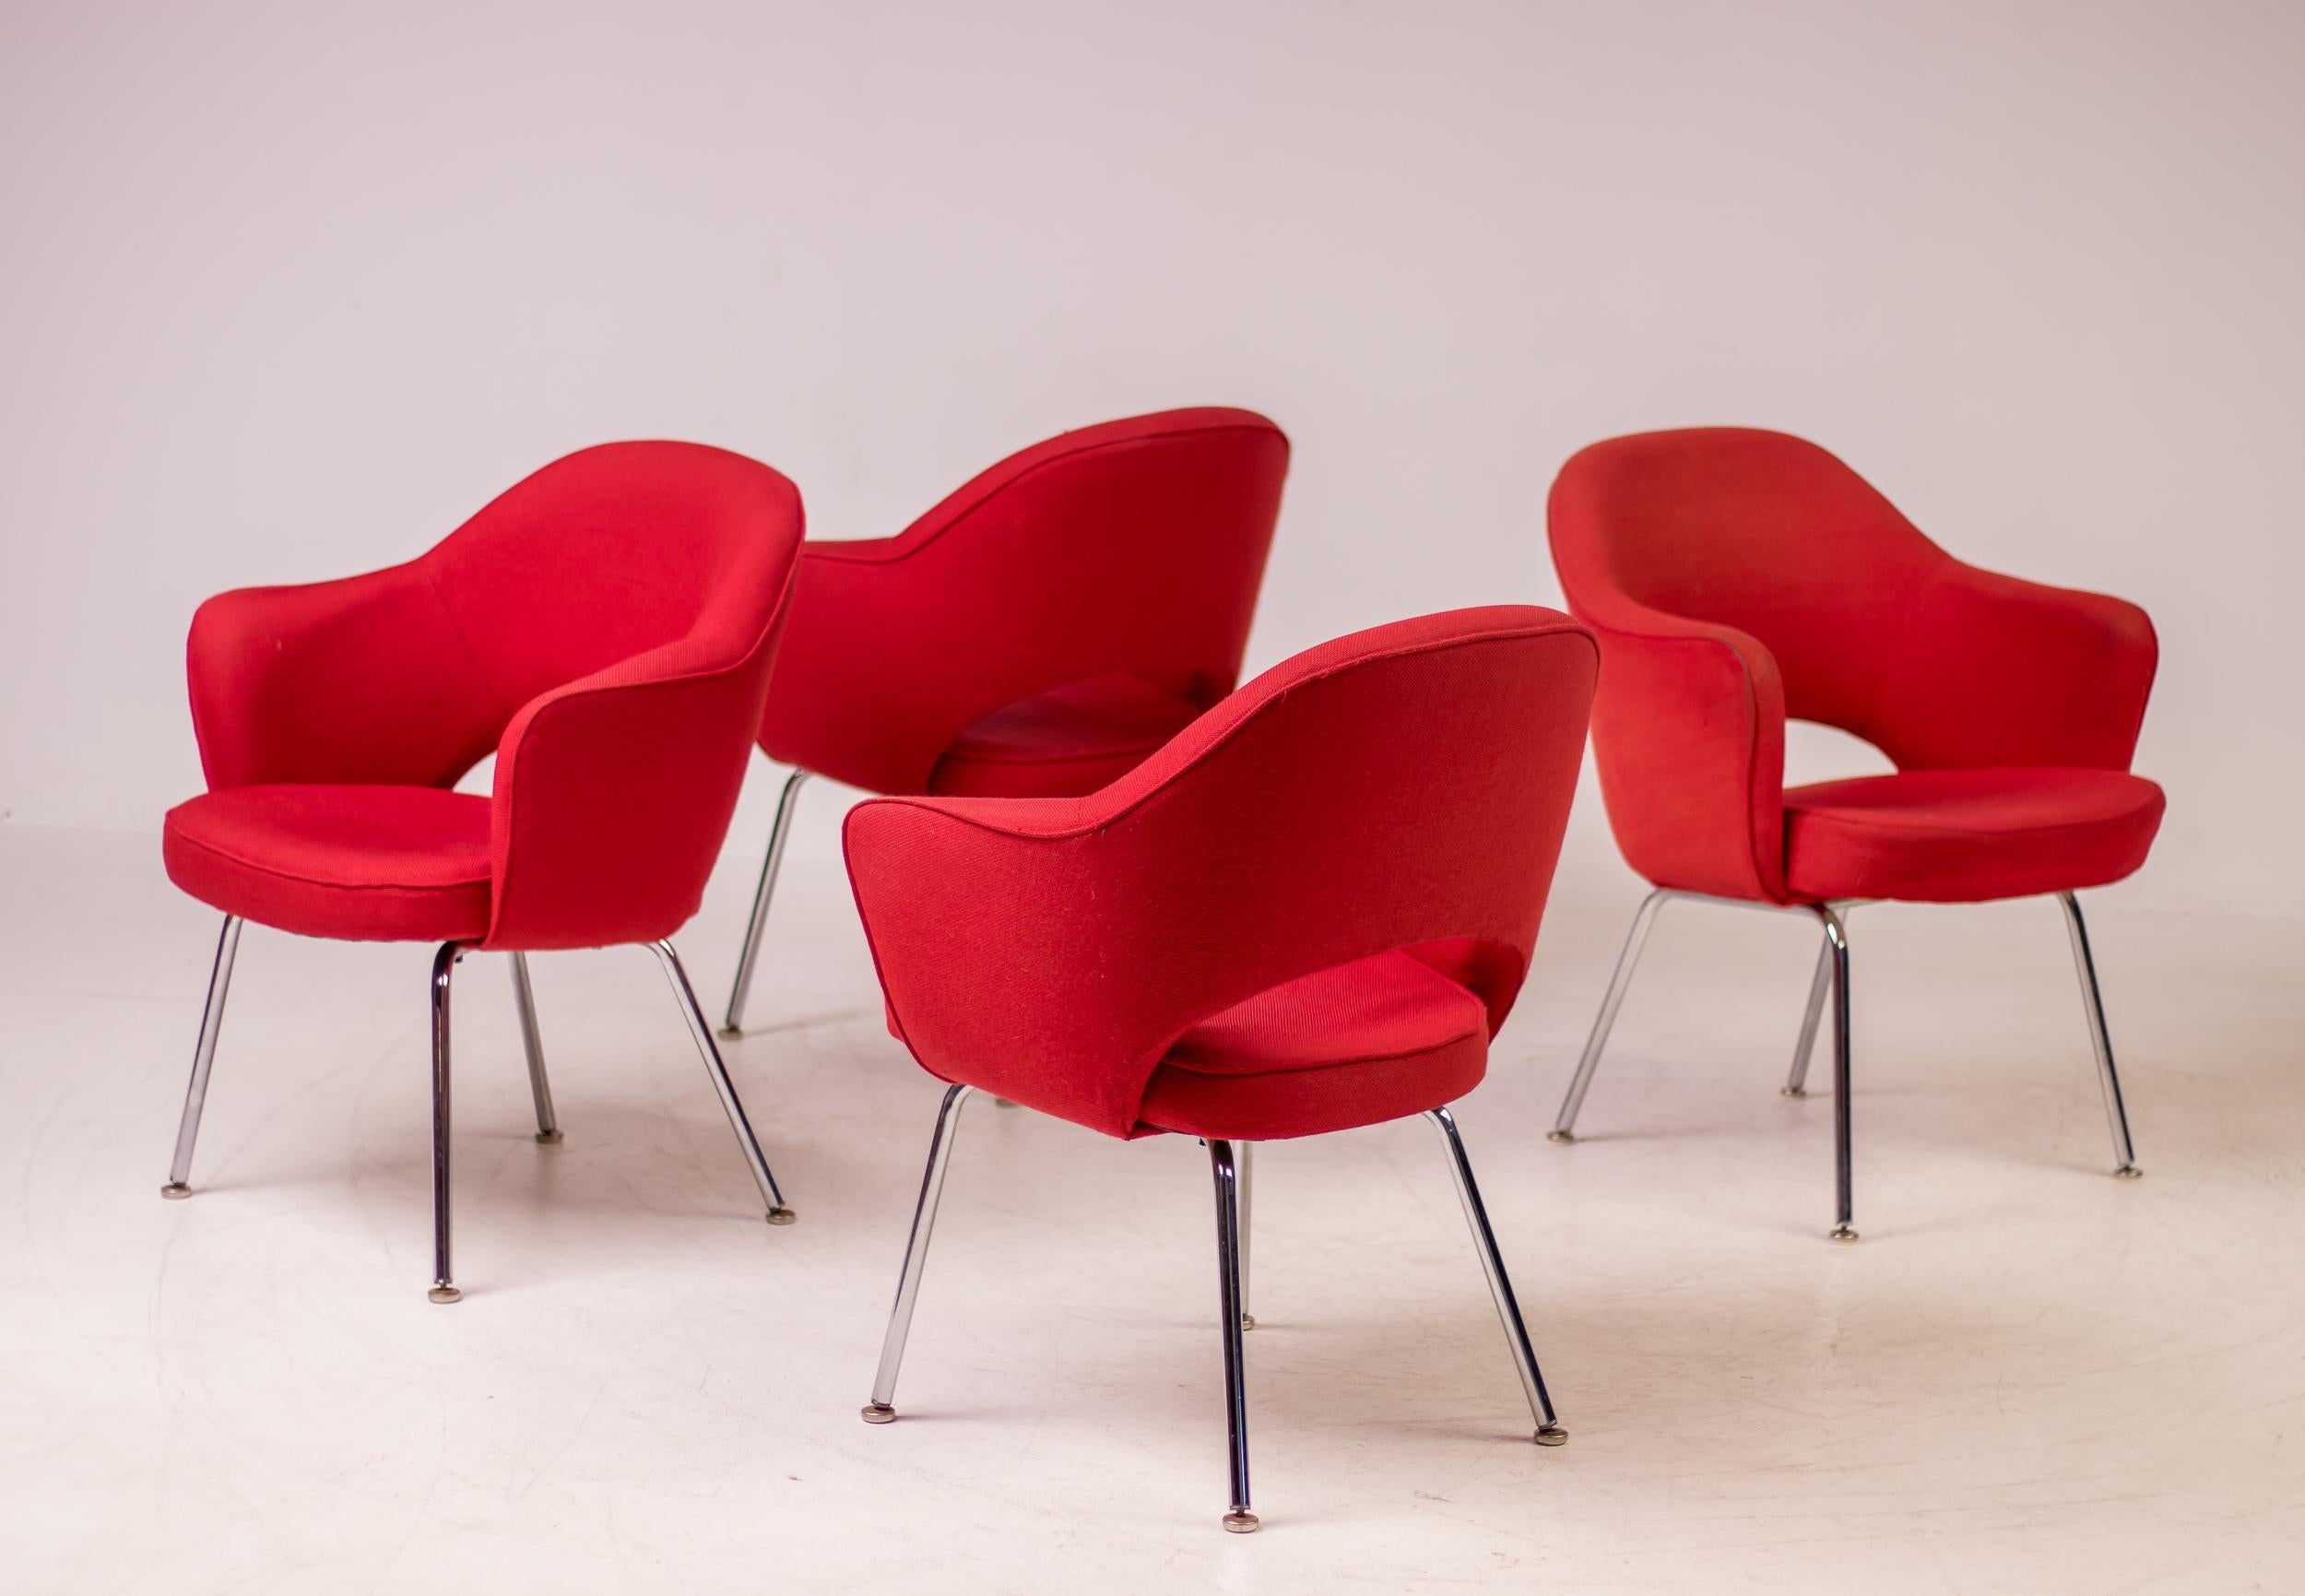 Présente dans presque tous les intérieurs conçus par Florence Knoll, la chaise de direction Saarinen est restée l'un des modèles les plus populaires de Knoll pendant près de 70 ans. Ce design, que l'on retrouve aujourd'hui aussi bien dans les salles